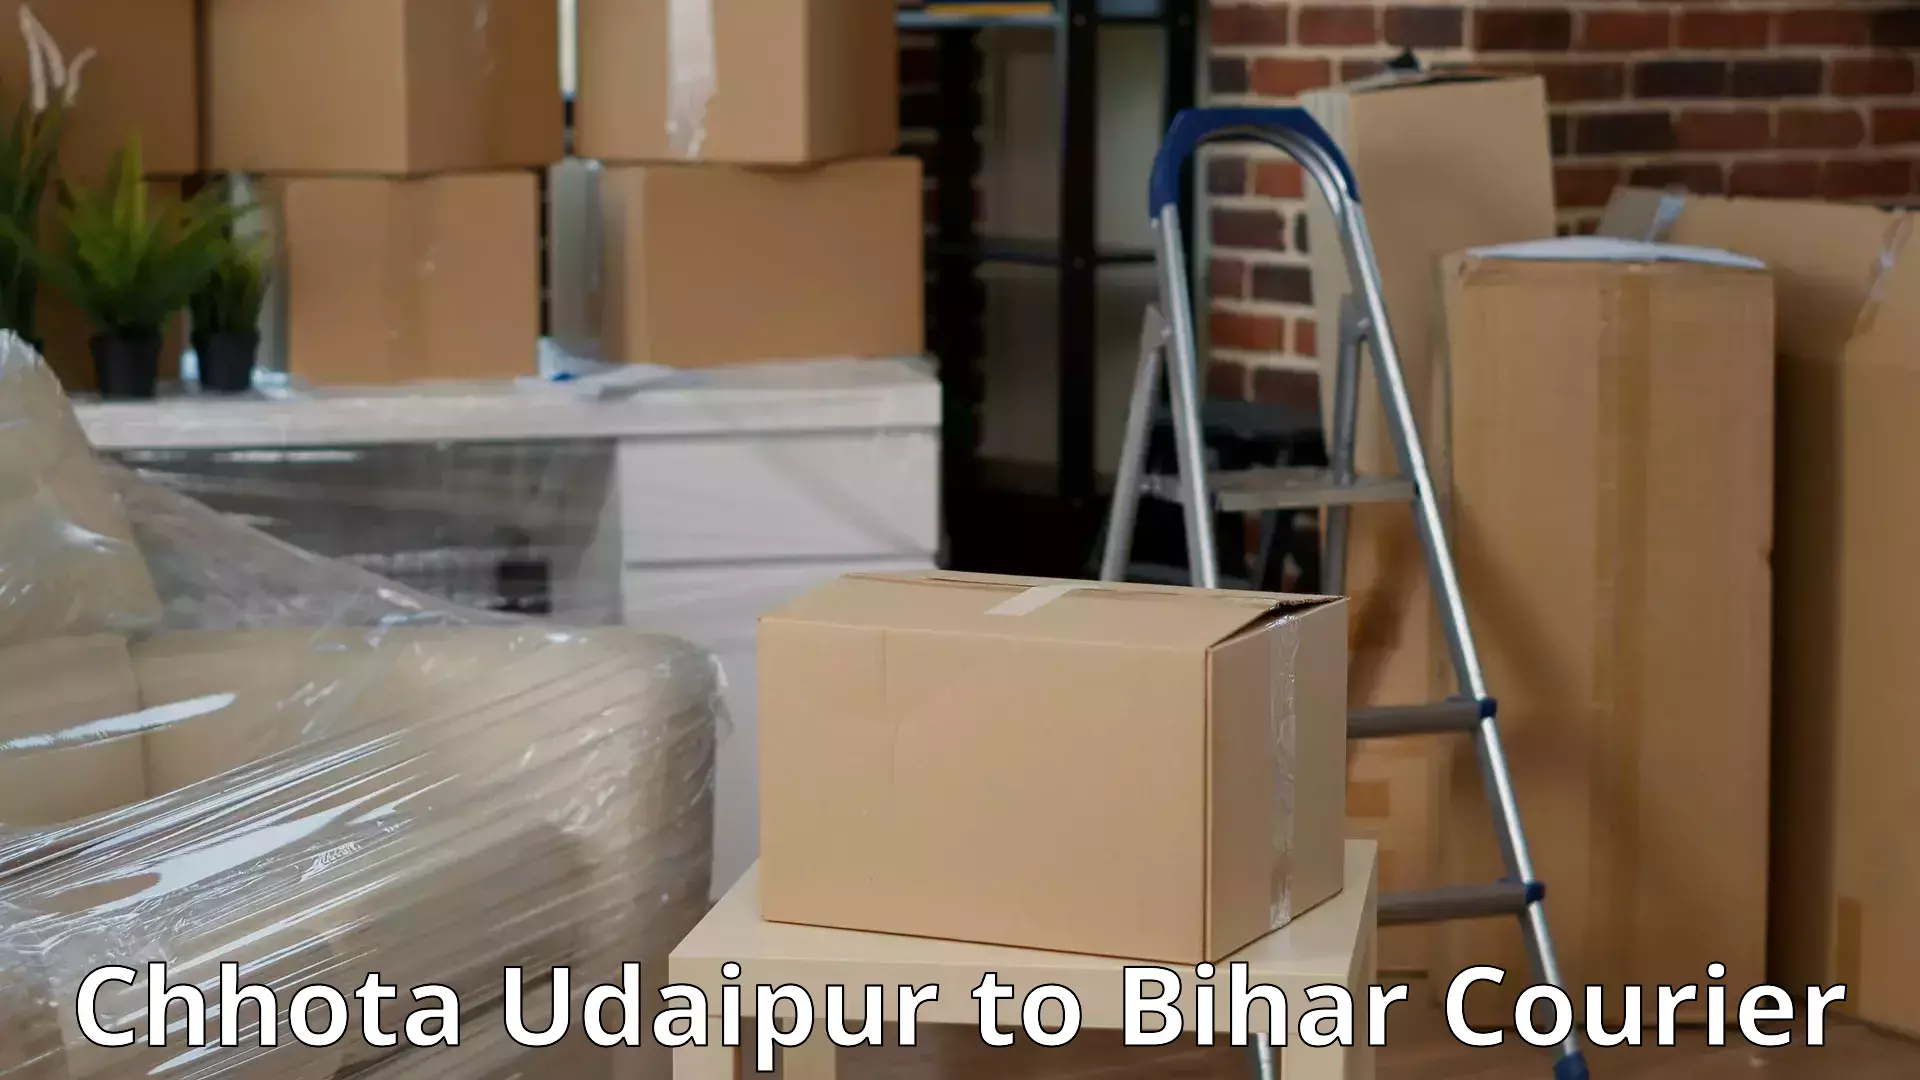 Quality moving company Chhota Udaipur to Bhojpur